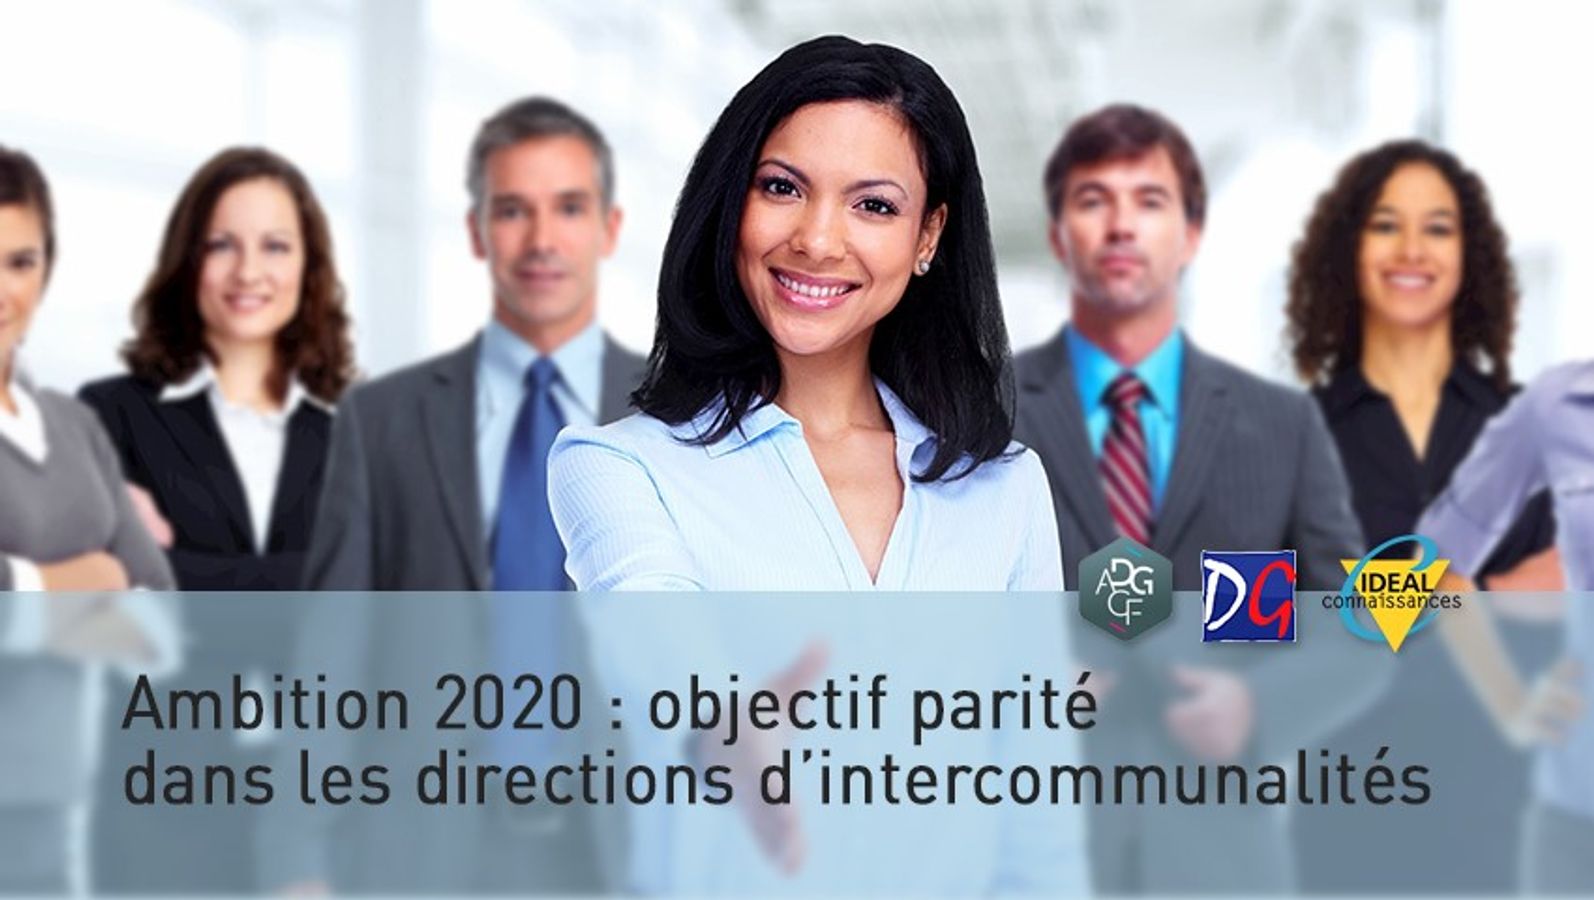 Ambition 2020 : objectif parité dans les directions d'intercommunalités.